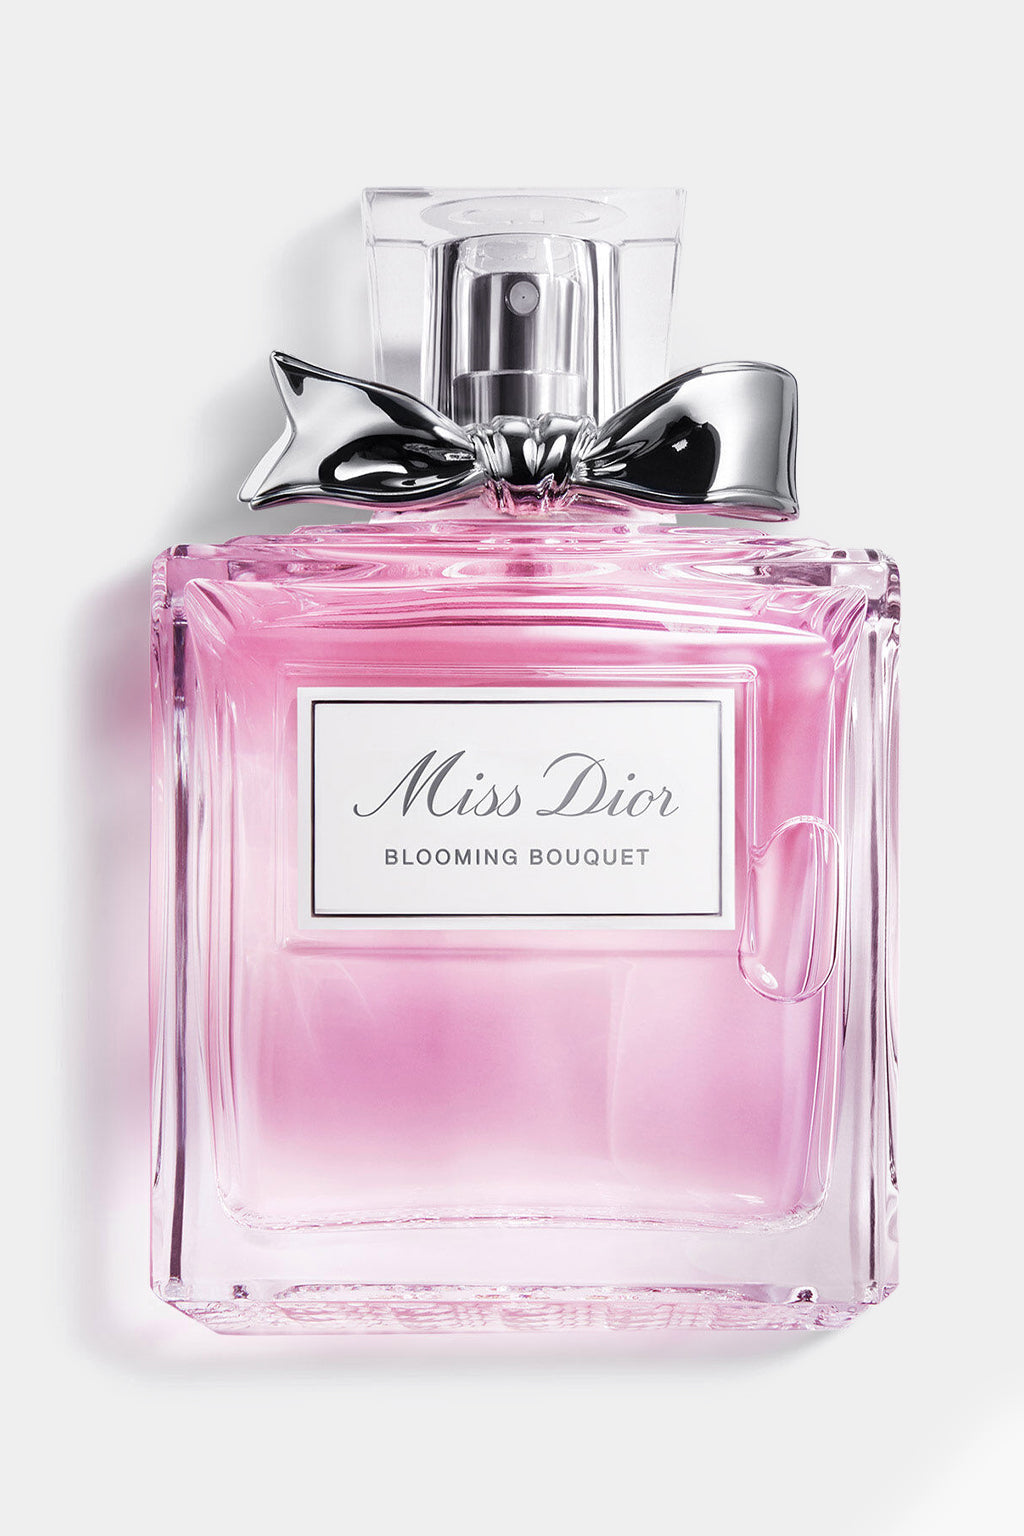 Christian Dior - Miss Dior Blooming Bouquet Eau de Toilette